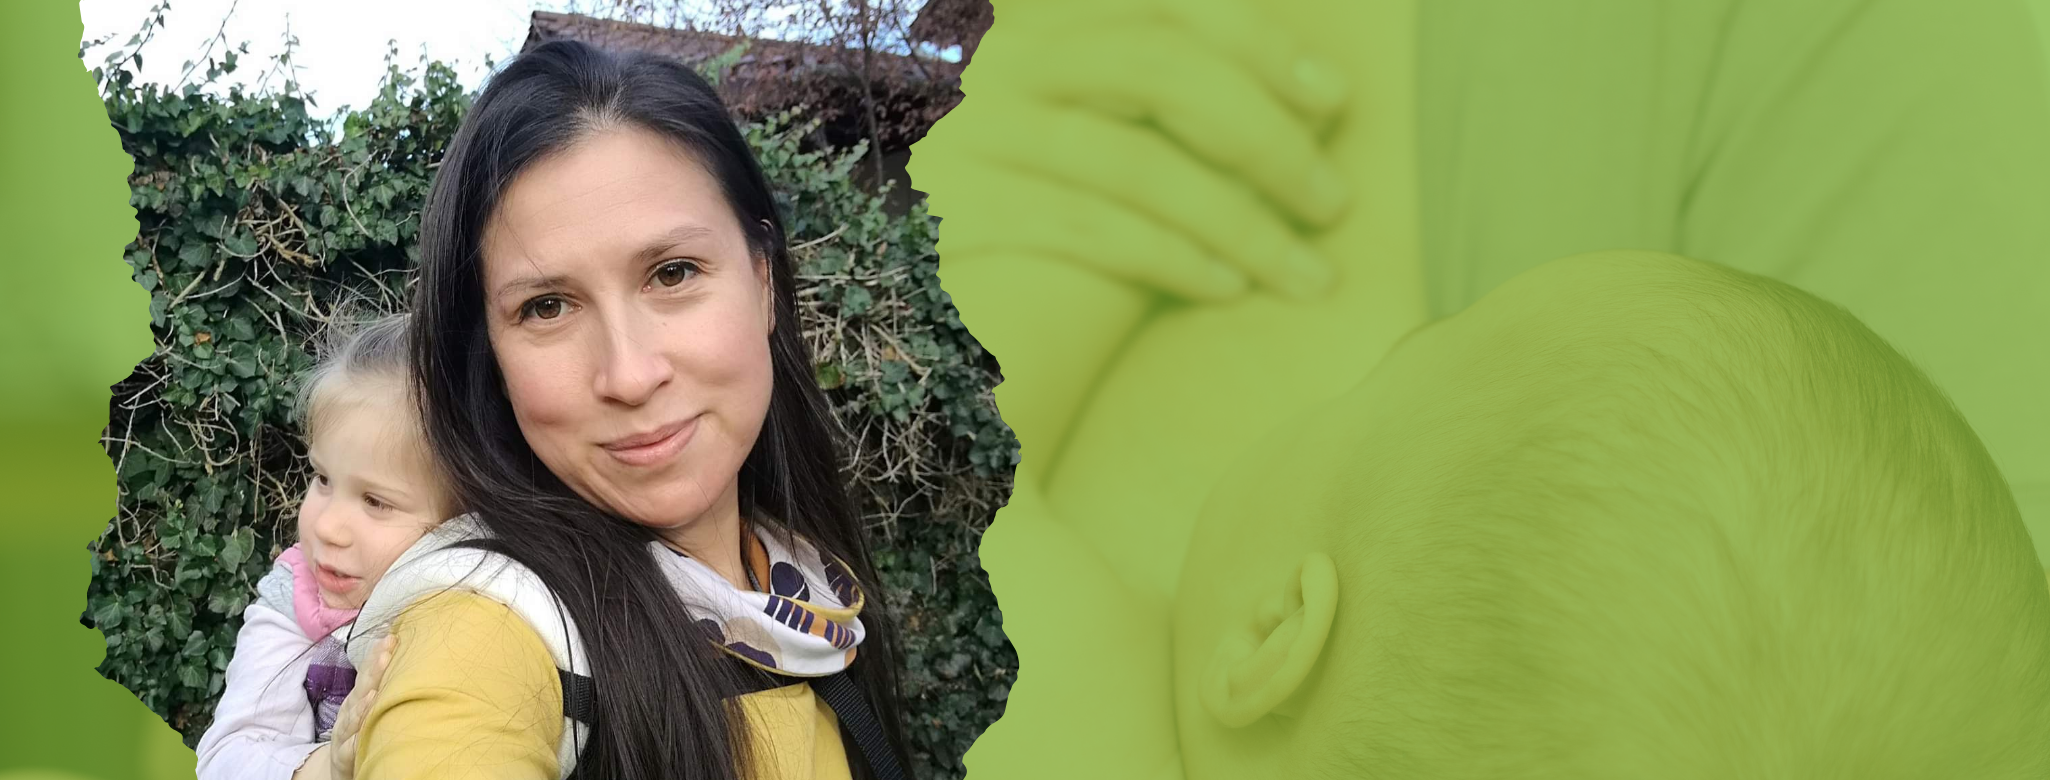 Pocakkímélő szoptatás? – Interjú Do Dinh Laura szoptatási tanácsadóval